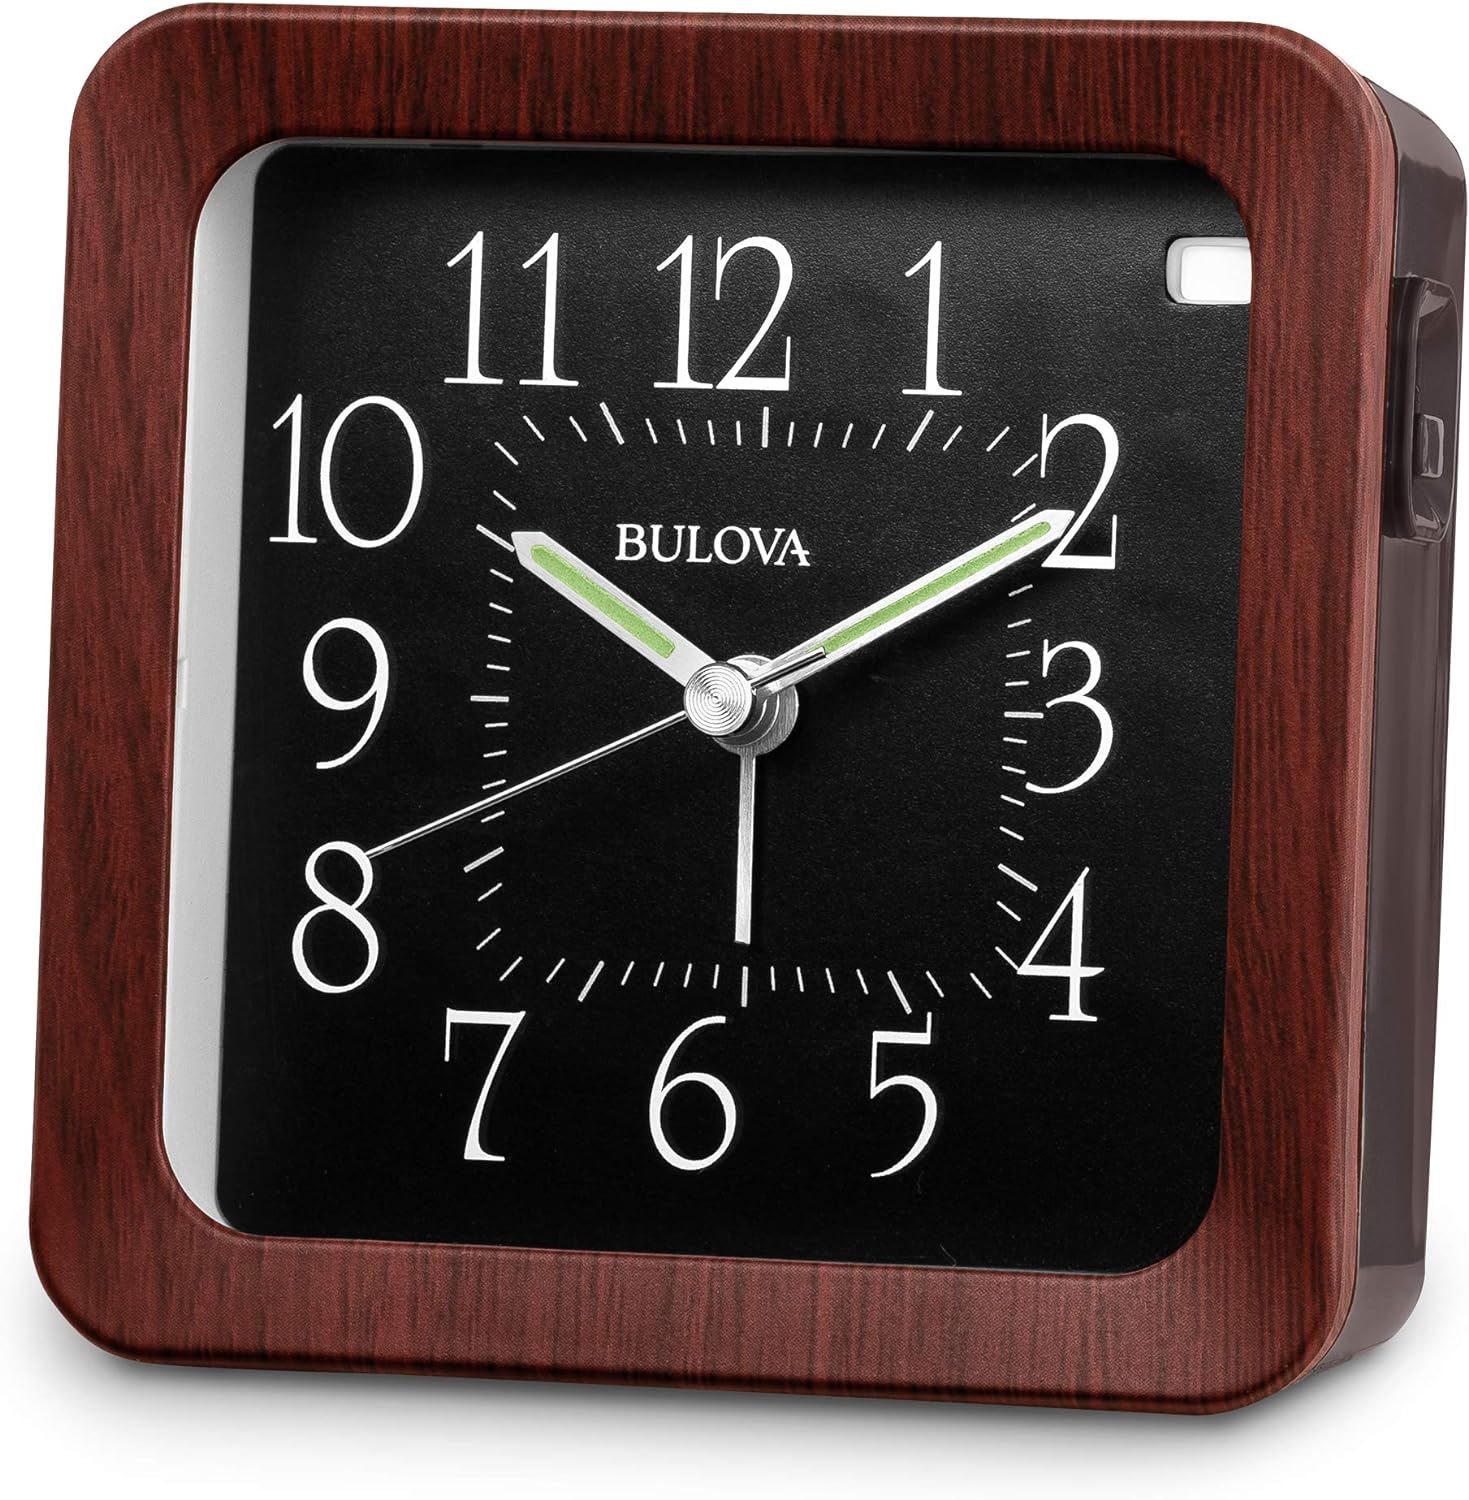 Bulova B1870 Manor Easy To Read LED Tabletop/Wall Alarm Clock